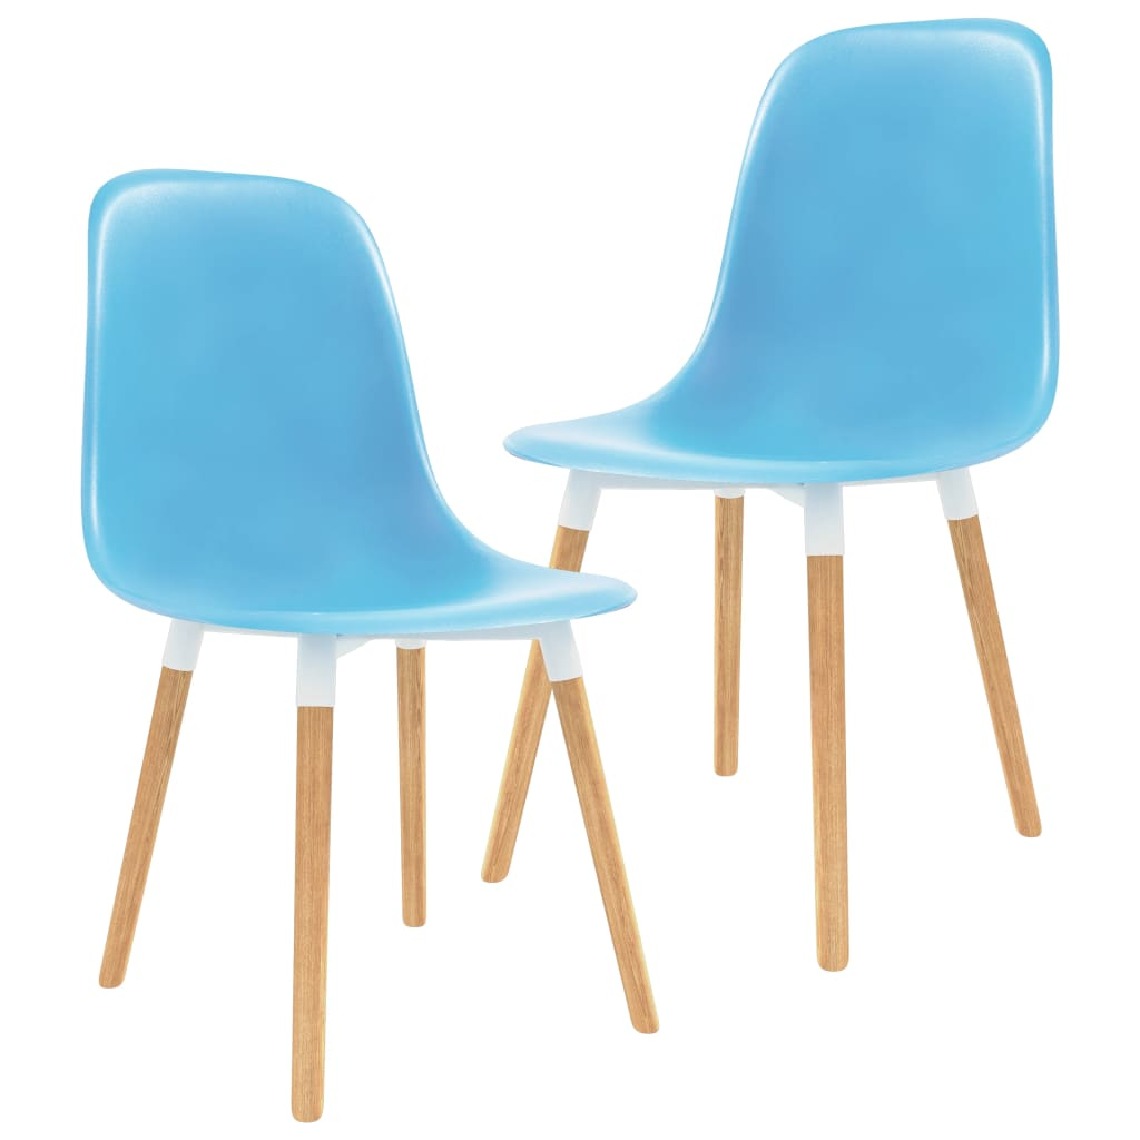 Chunhelife - Chunhelife Chaises de salle à manger 2 pcs Bleu Plastique - Chaises